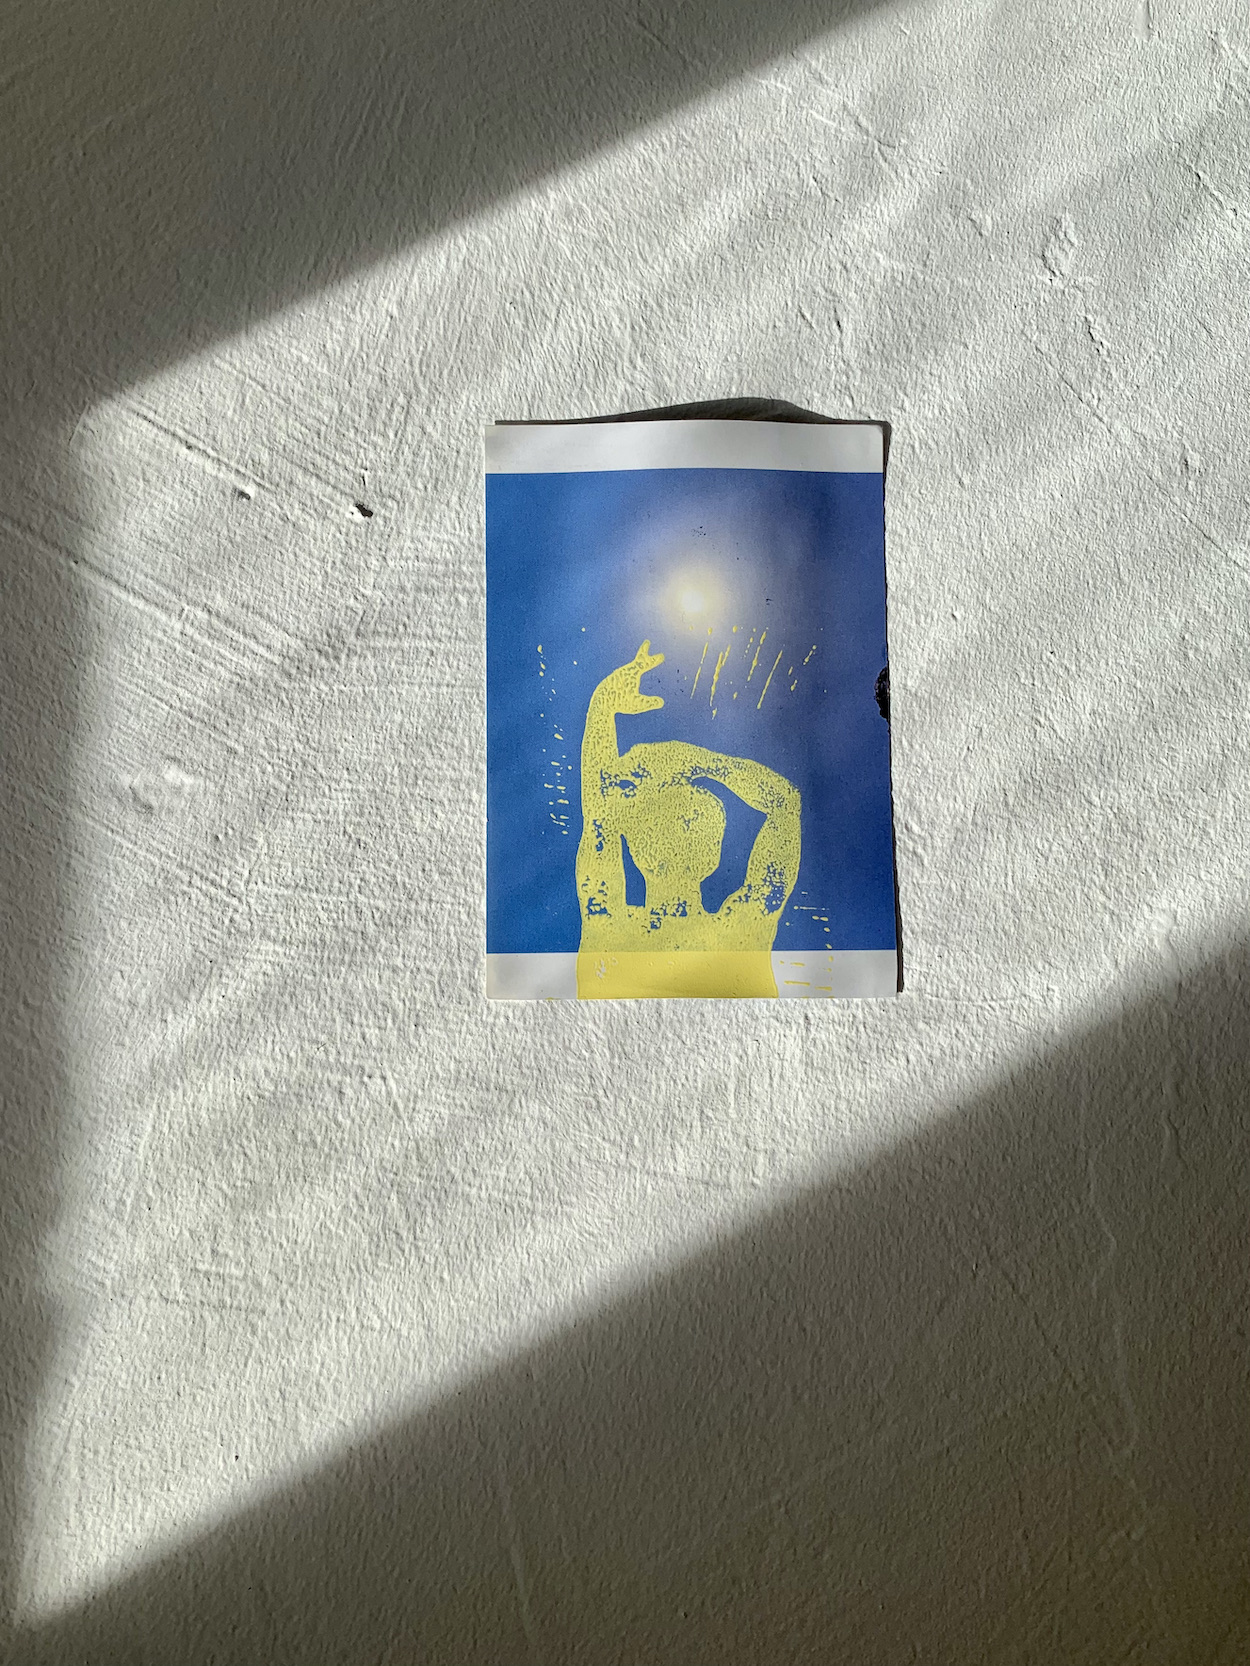 A yellow linoleum print on a blue landscape